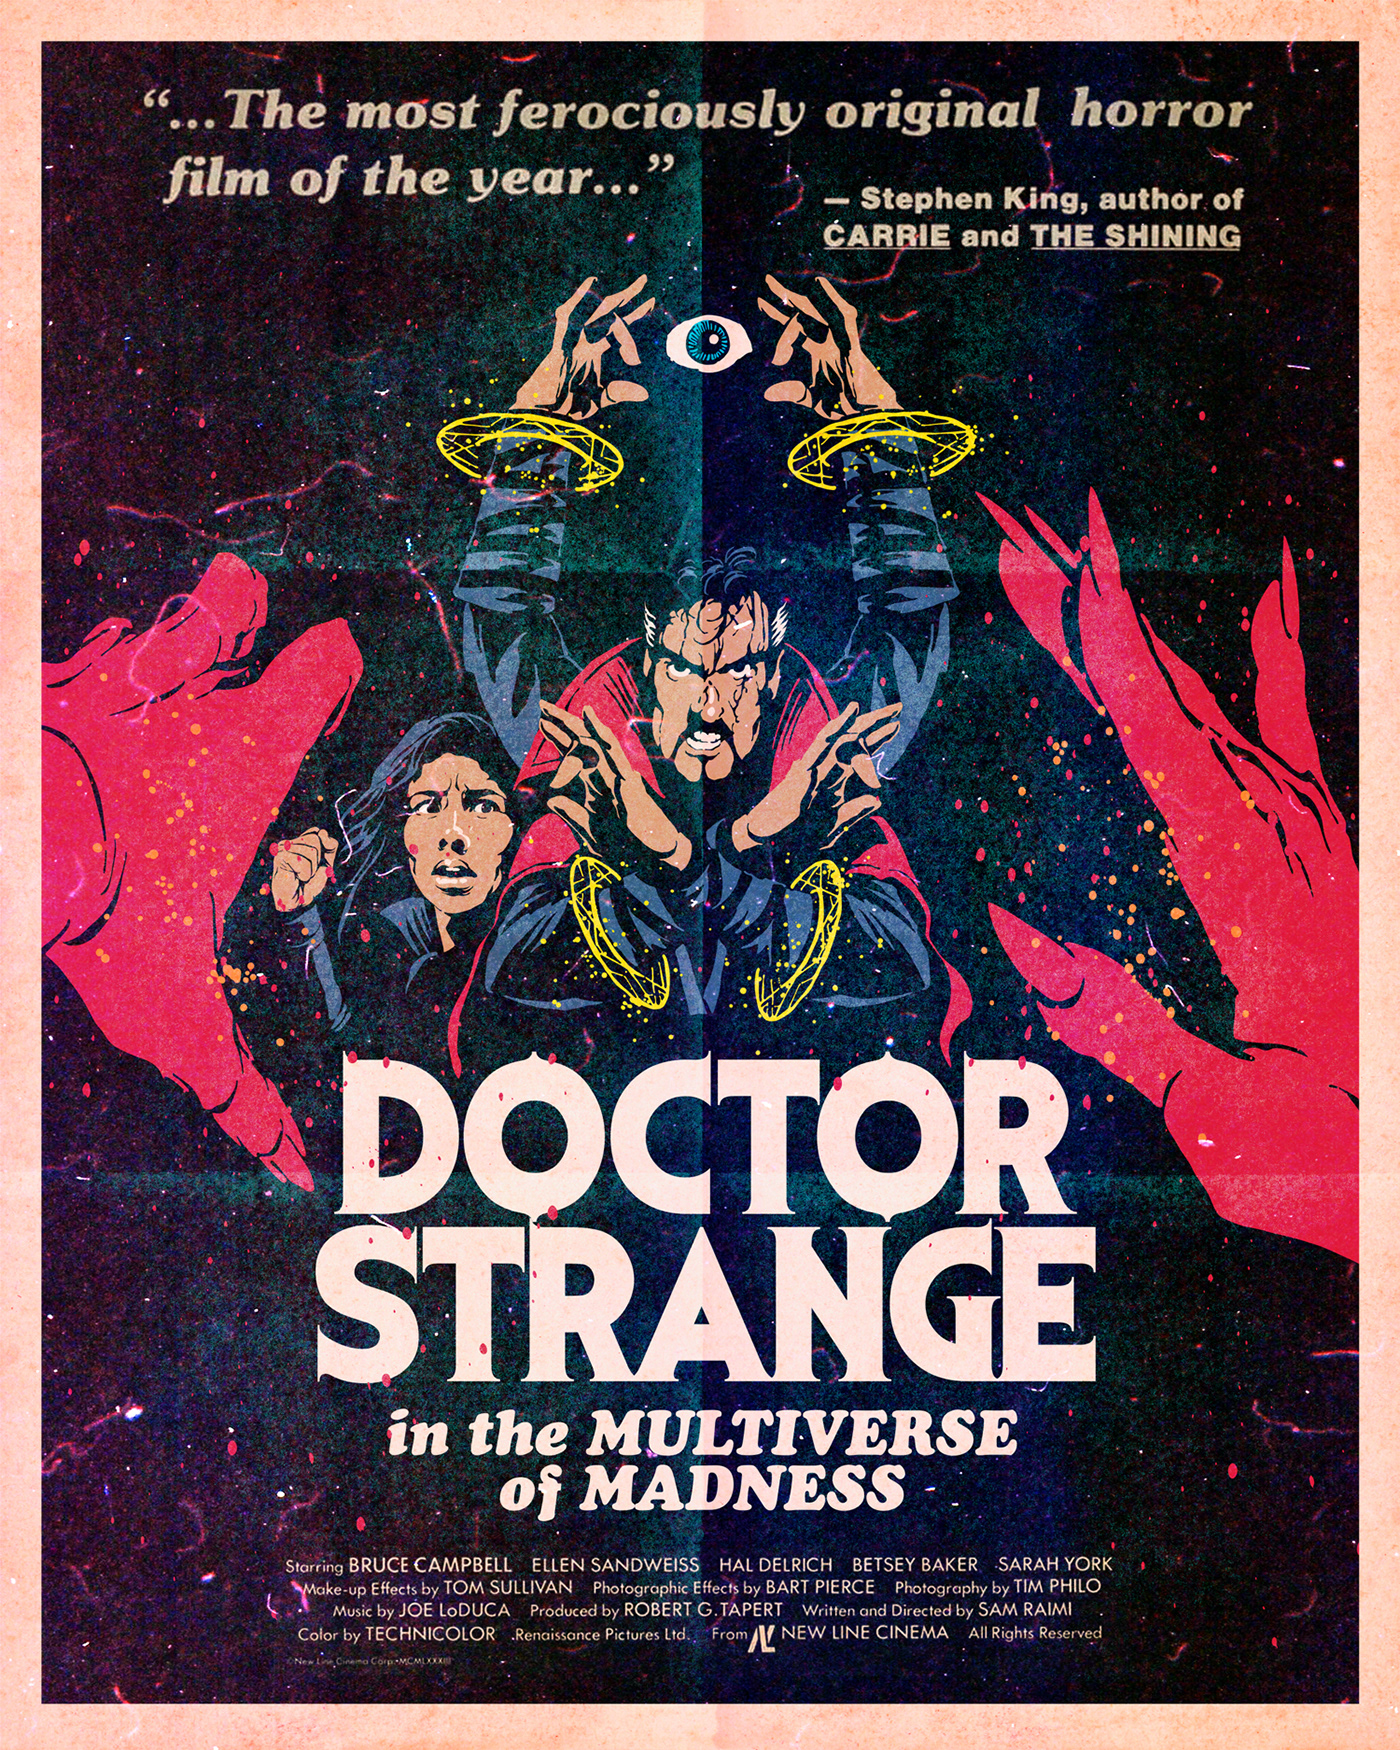 america chavez Avengers bruce campbell Doctor Strange evil dead horror marvel marvel comics Marvel Studios Sam Raimi